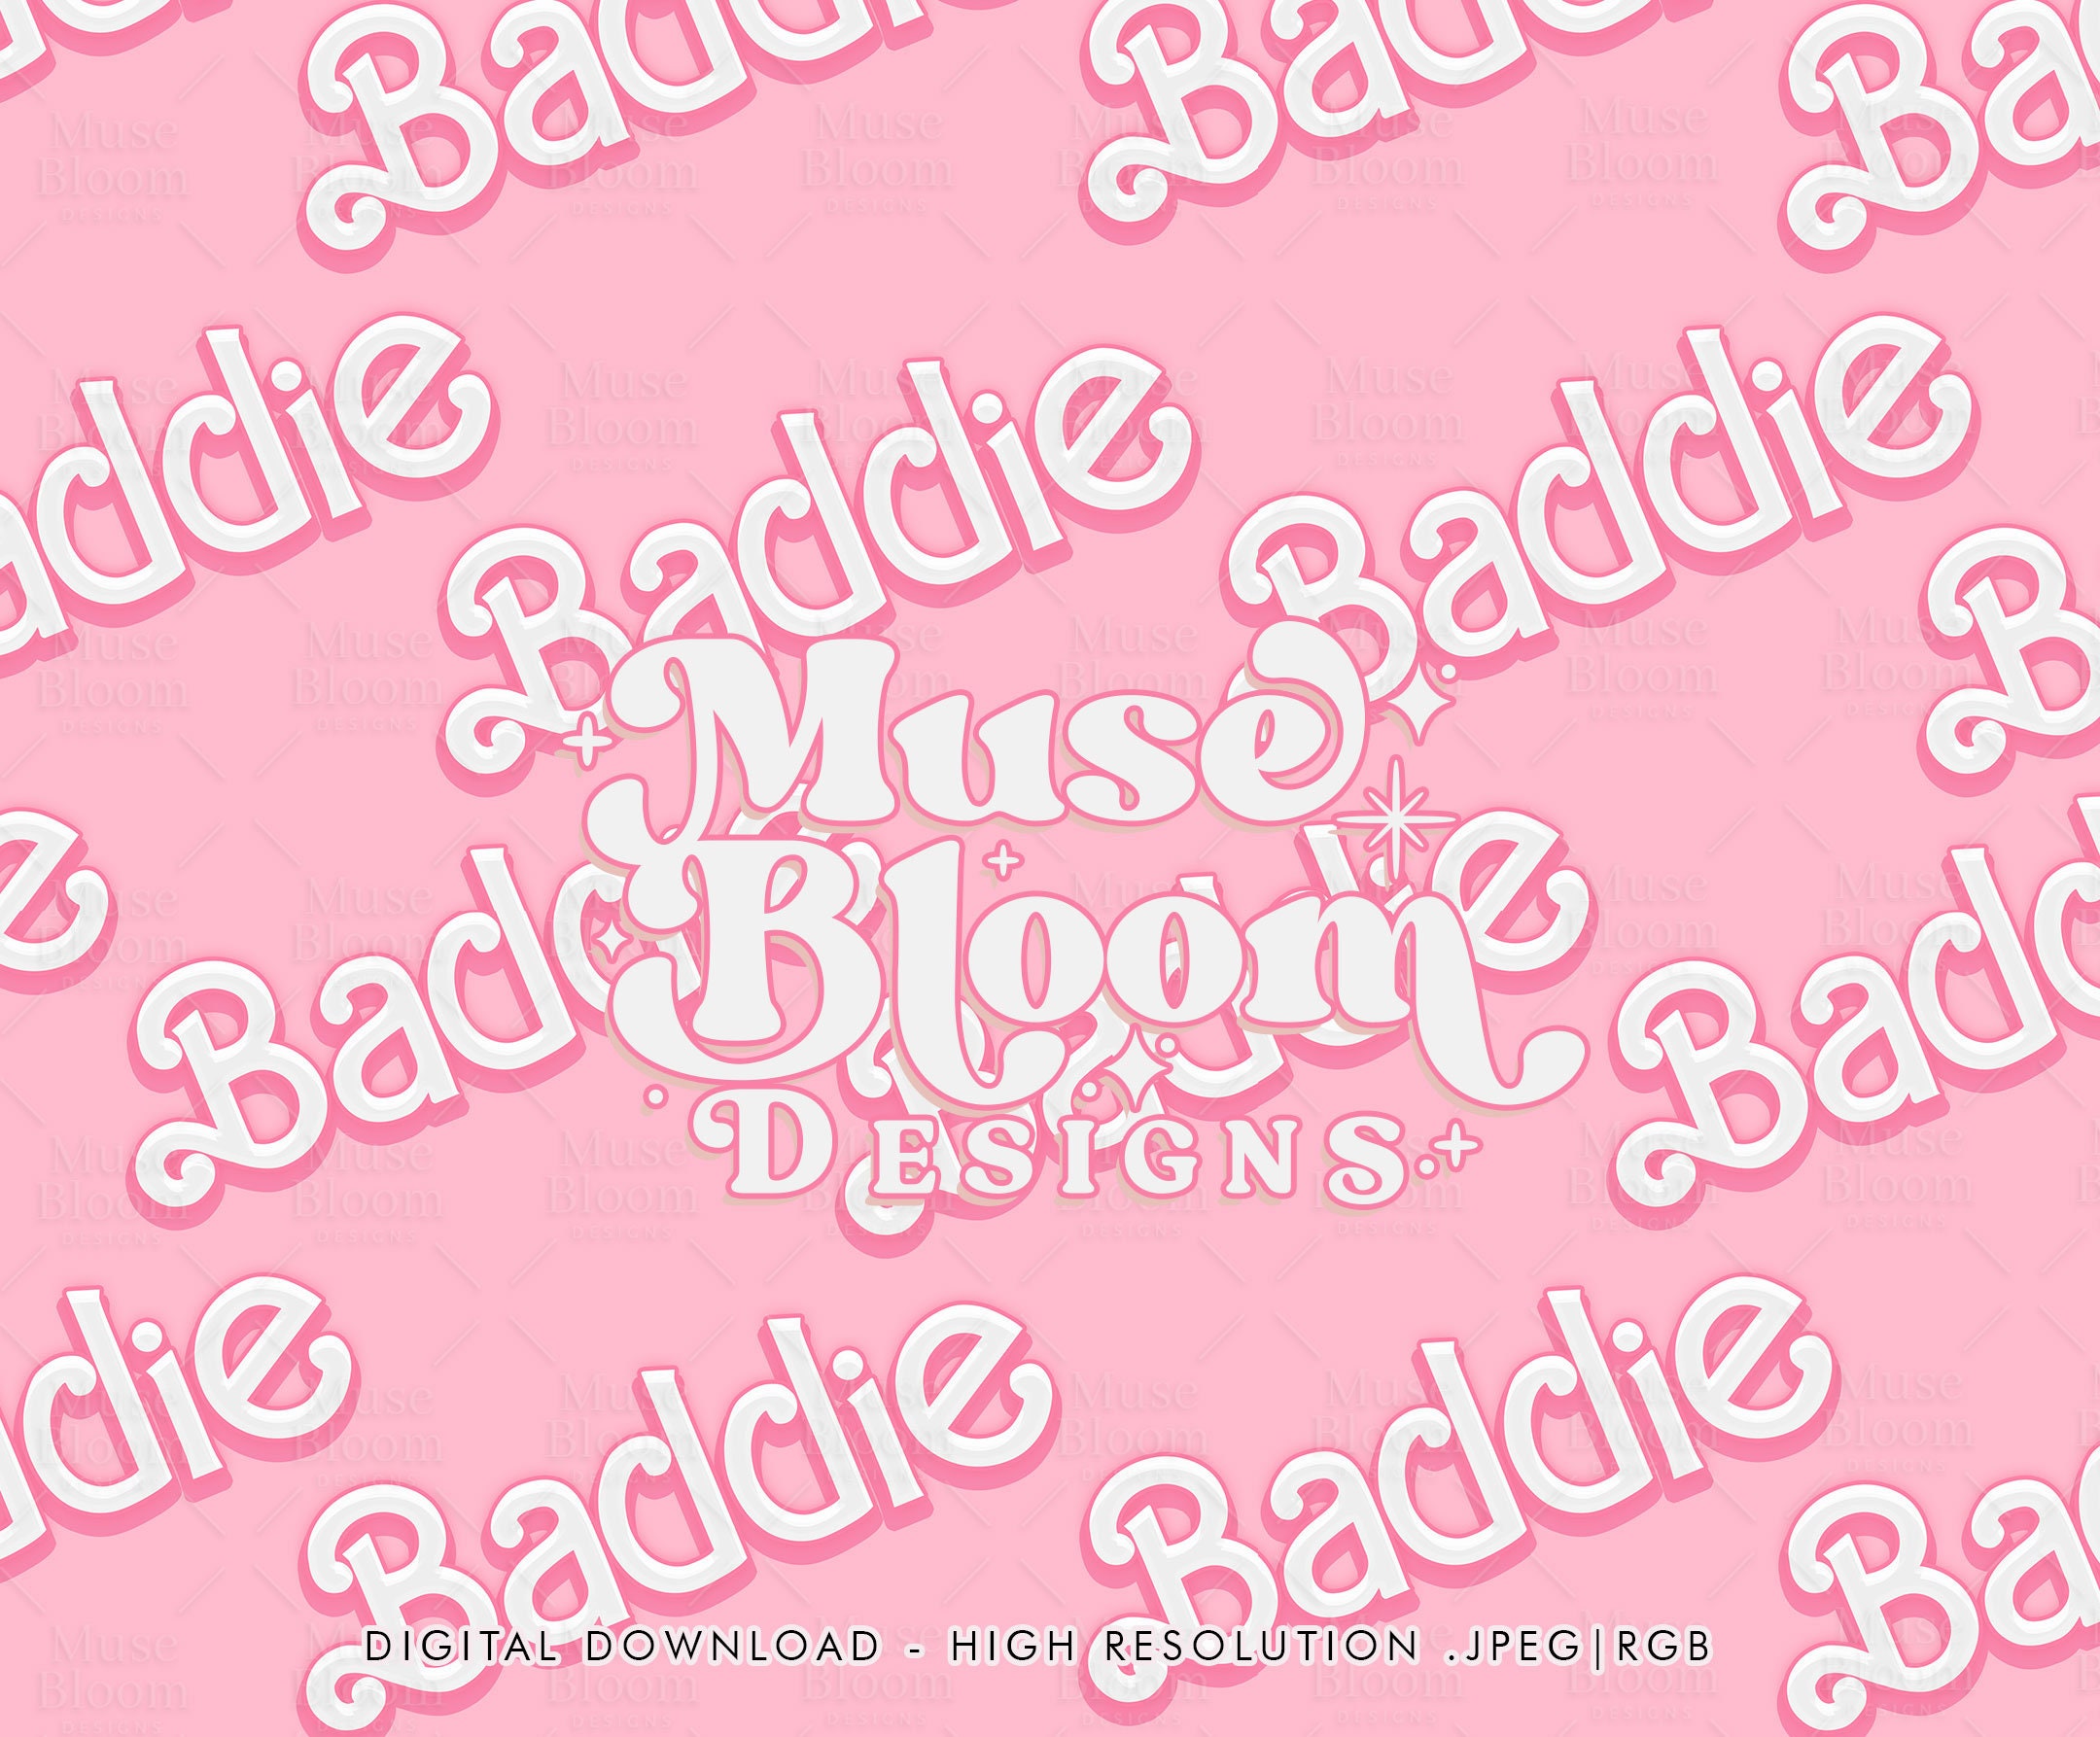 Download Powerpuff Girls' Buttercup Baddie PFP Wallpaper